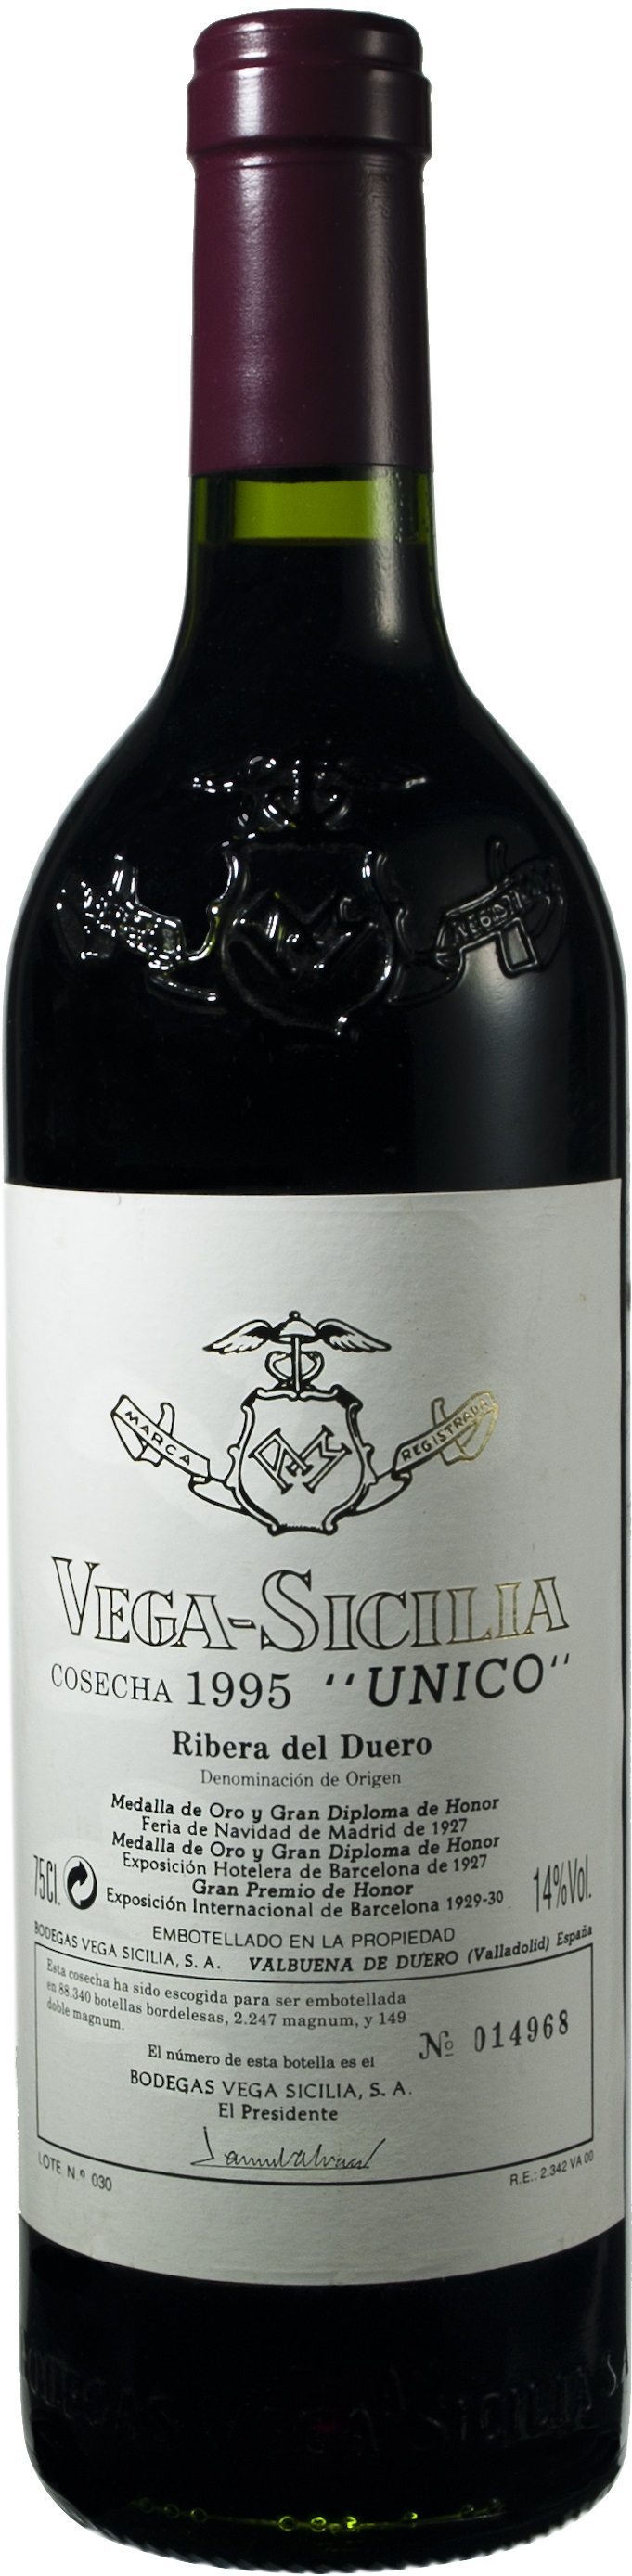 Bild von der Weinflasche Vega Sicilia Reserva